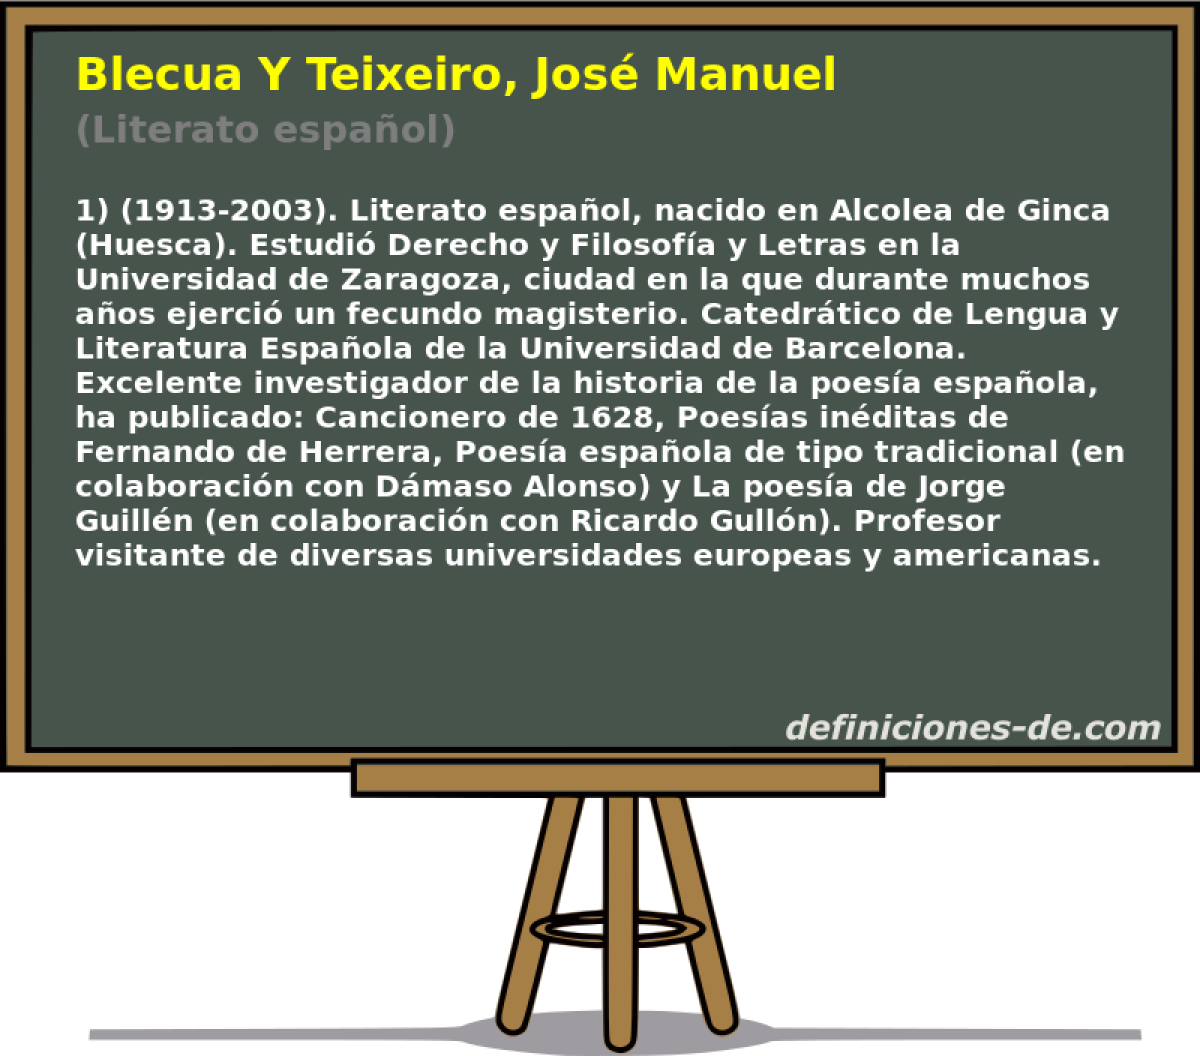 Blecua Y Teixeiro, Jos Manuel (Literato espaol)